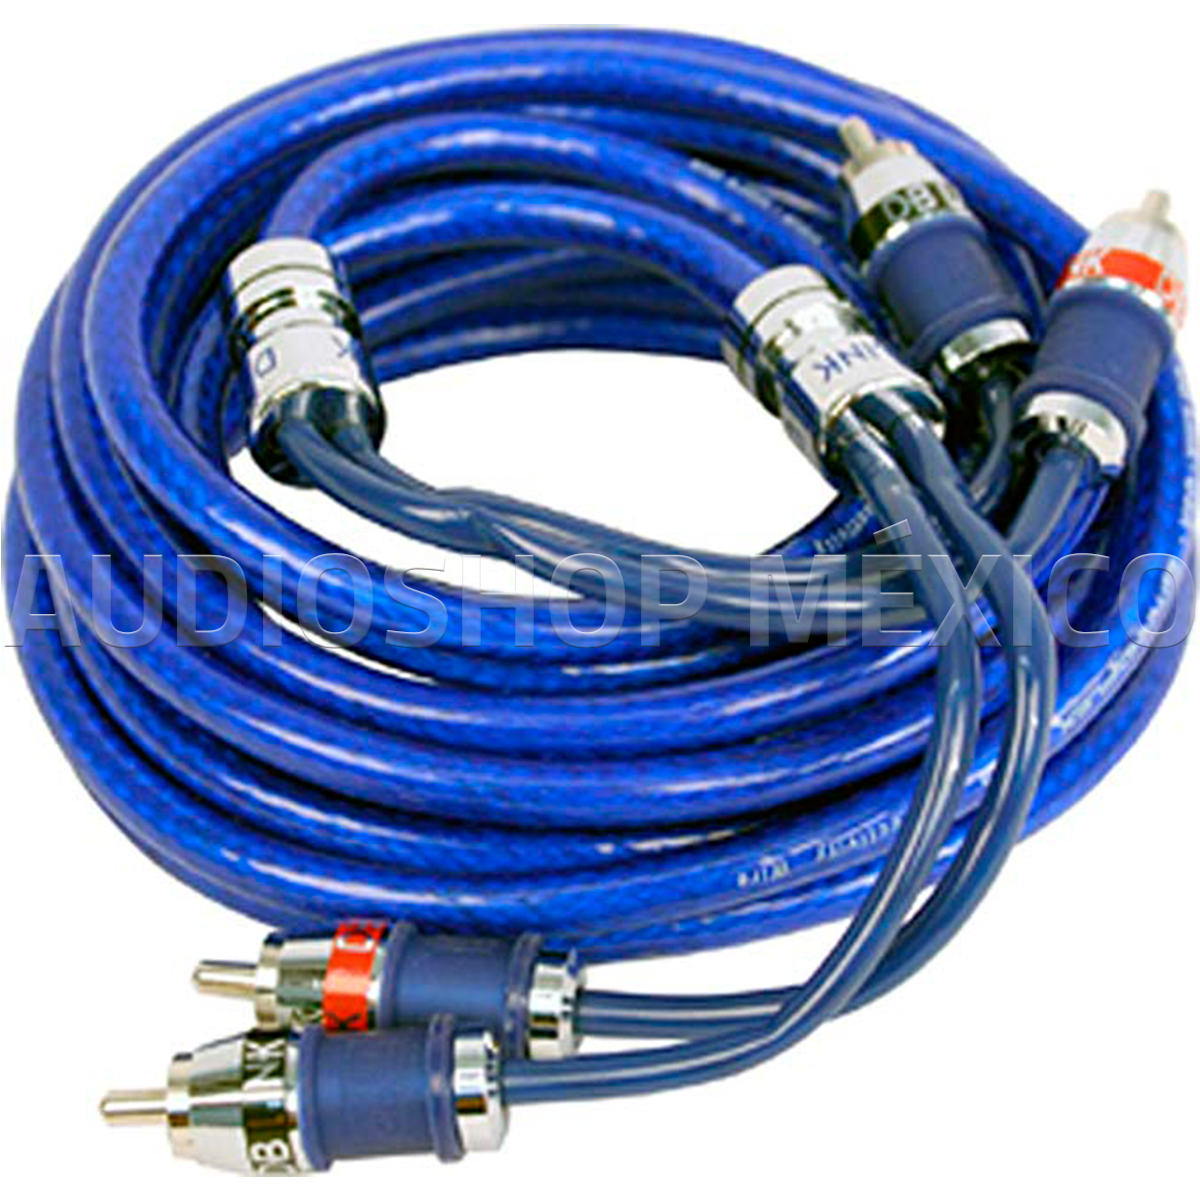 Cable RCA Ultraflexible DB Link SF15 15 pies 4.57 metros niquelada con blindaje de nylon fibra de vidrio